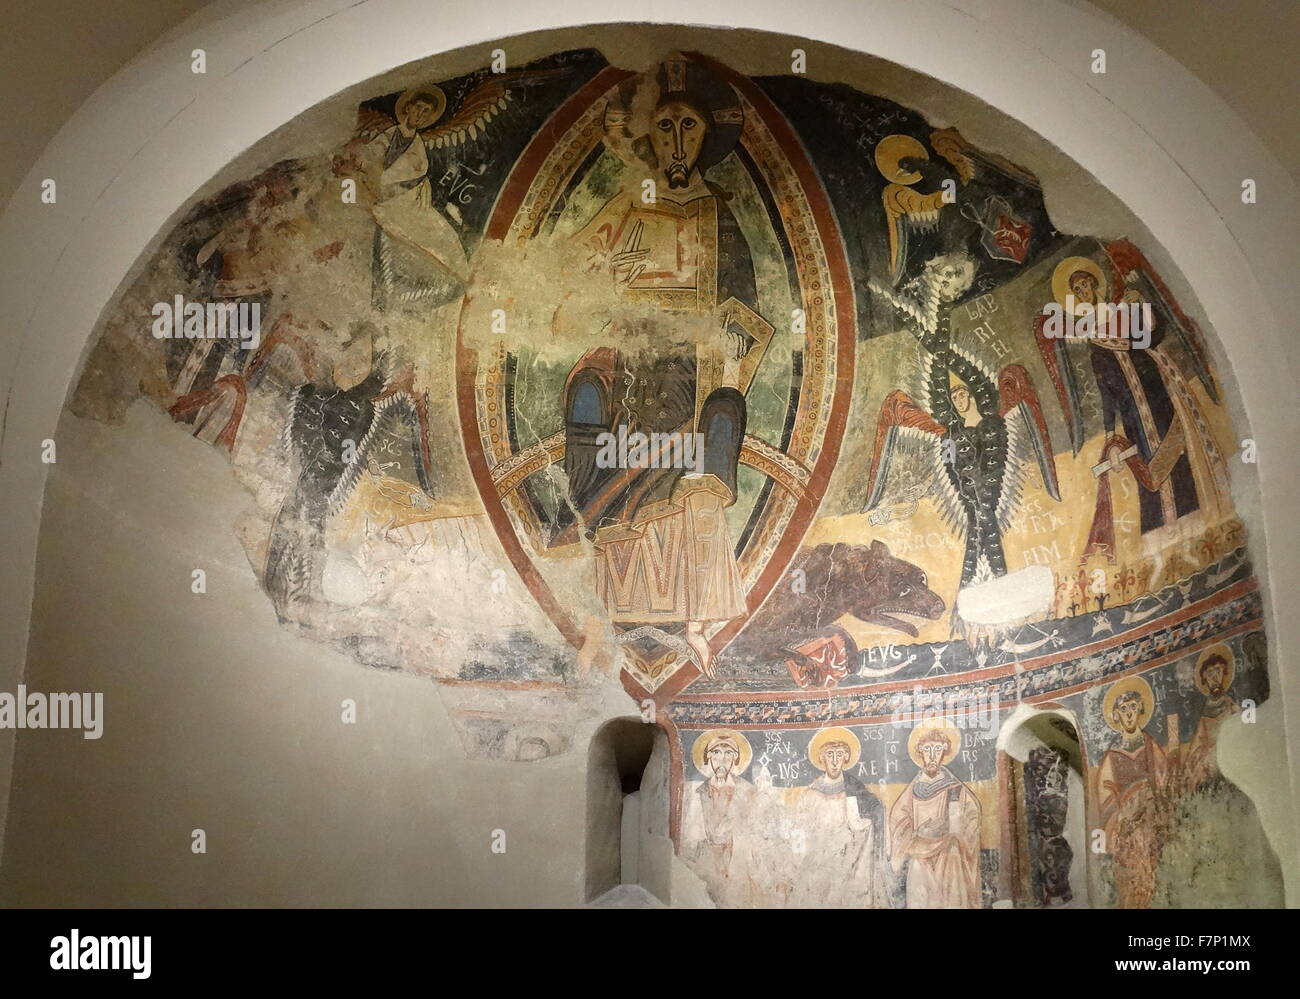 Dettaglio degli affreschi dell'abside di San Michele Marmellar, National Palace, Barcelona, Spagna. Datato xii secolo. Foto Stock